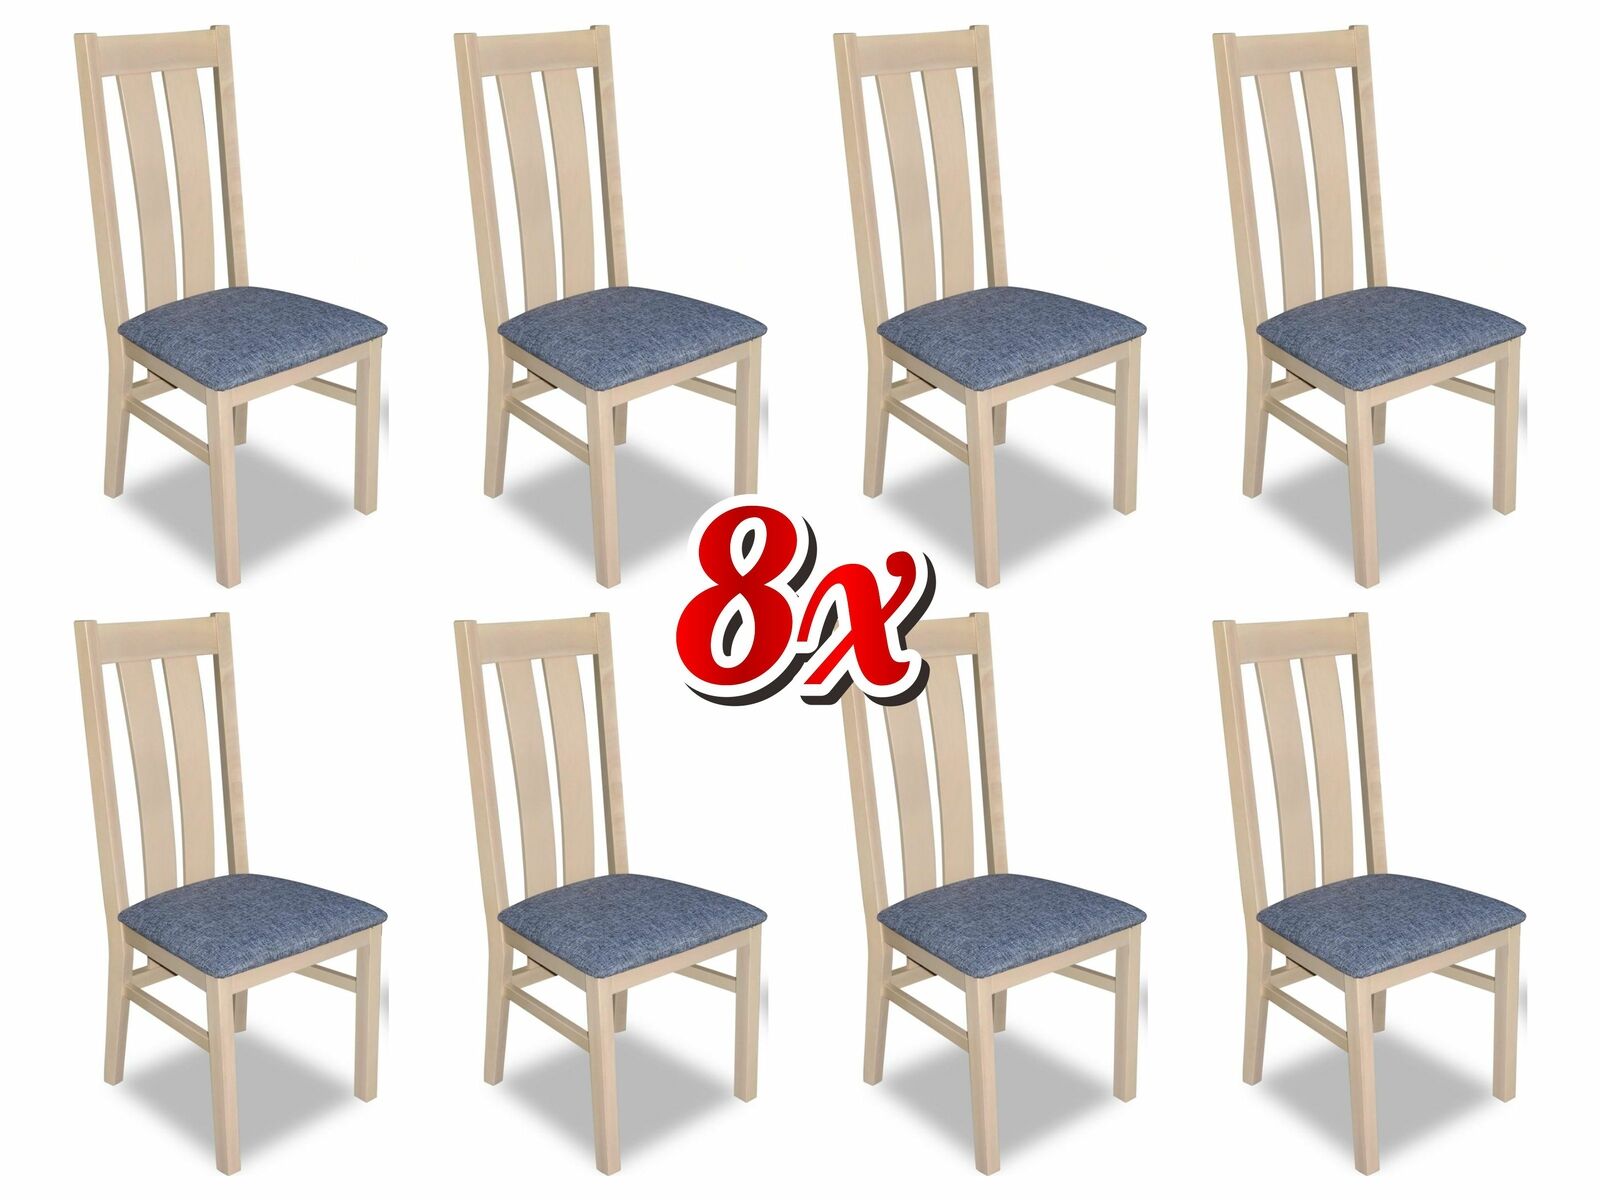 Designer Holz Textil Polster Stühle Gastro Esszimmer Stoff Set 8x Sessel Stuhl